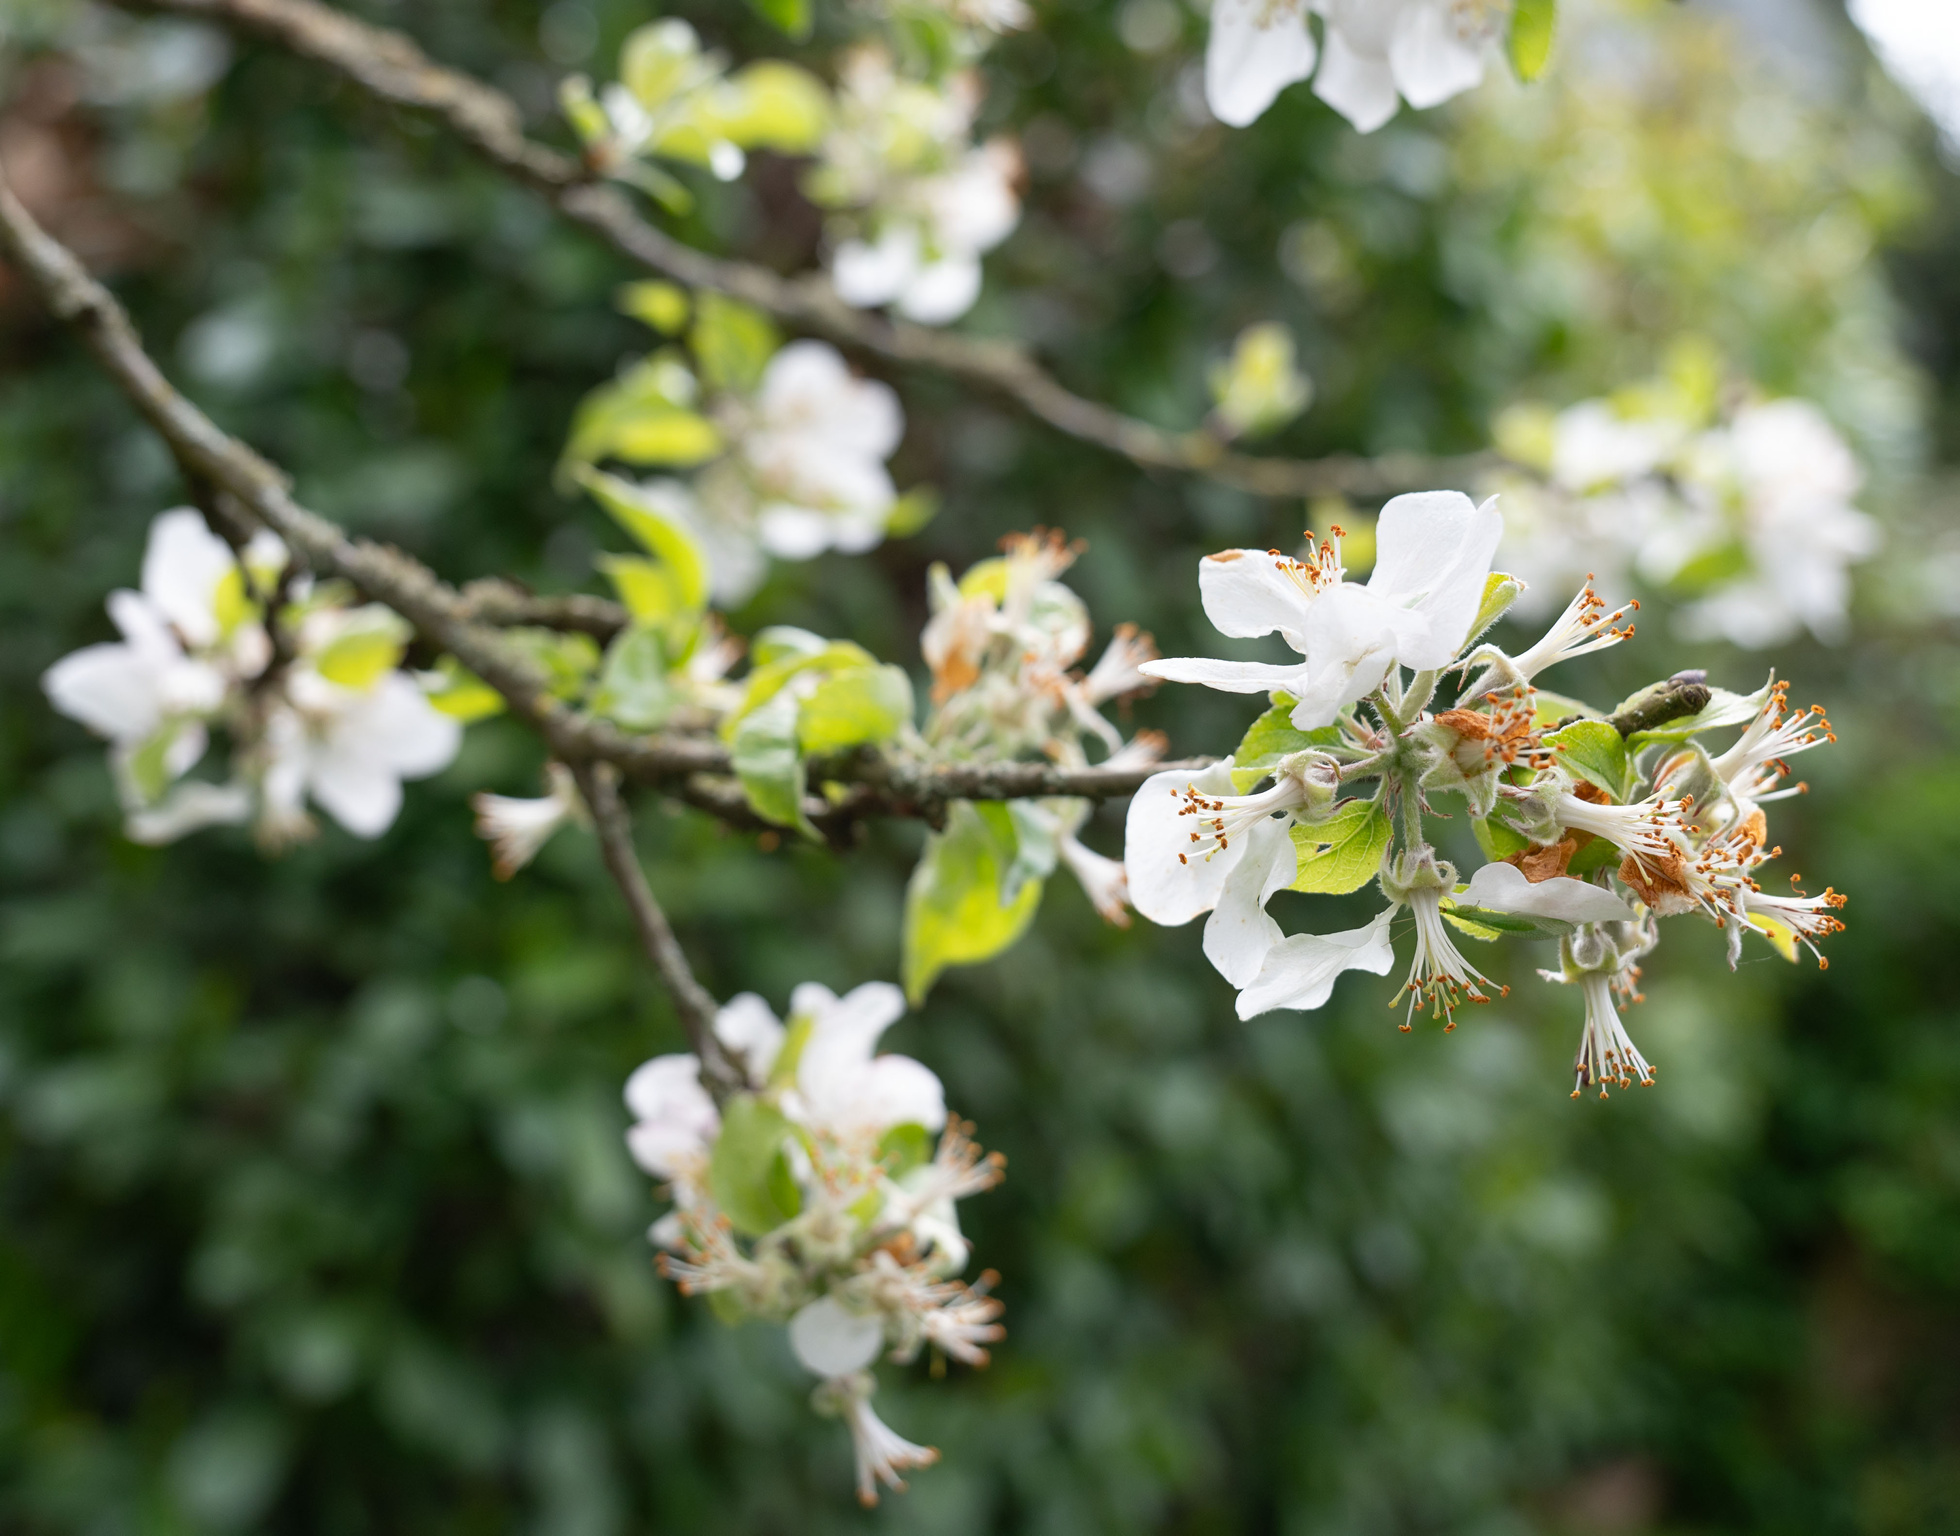 Viele Apfelbäume lassen die Blütenblätter braun werden und abfallen. Wie dramatisch sind die Kälteschäden? Bild: Vecsey